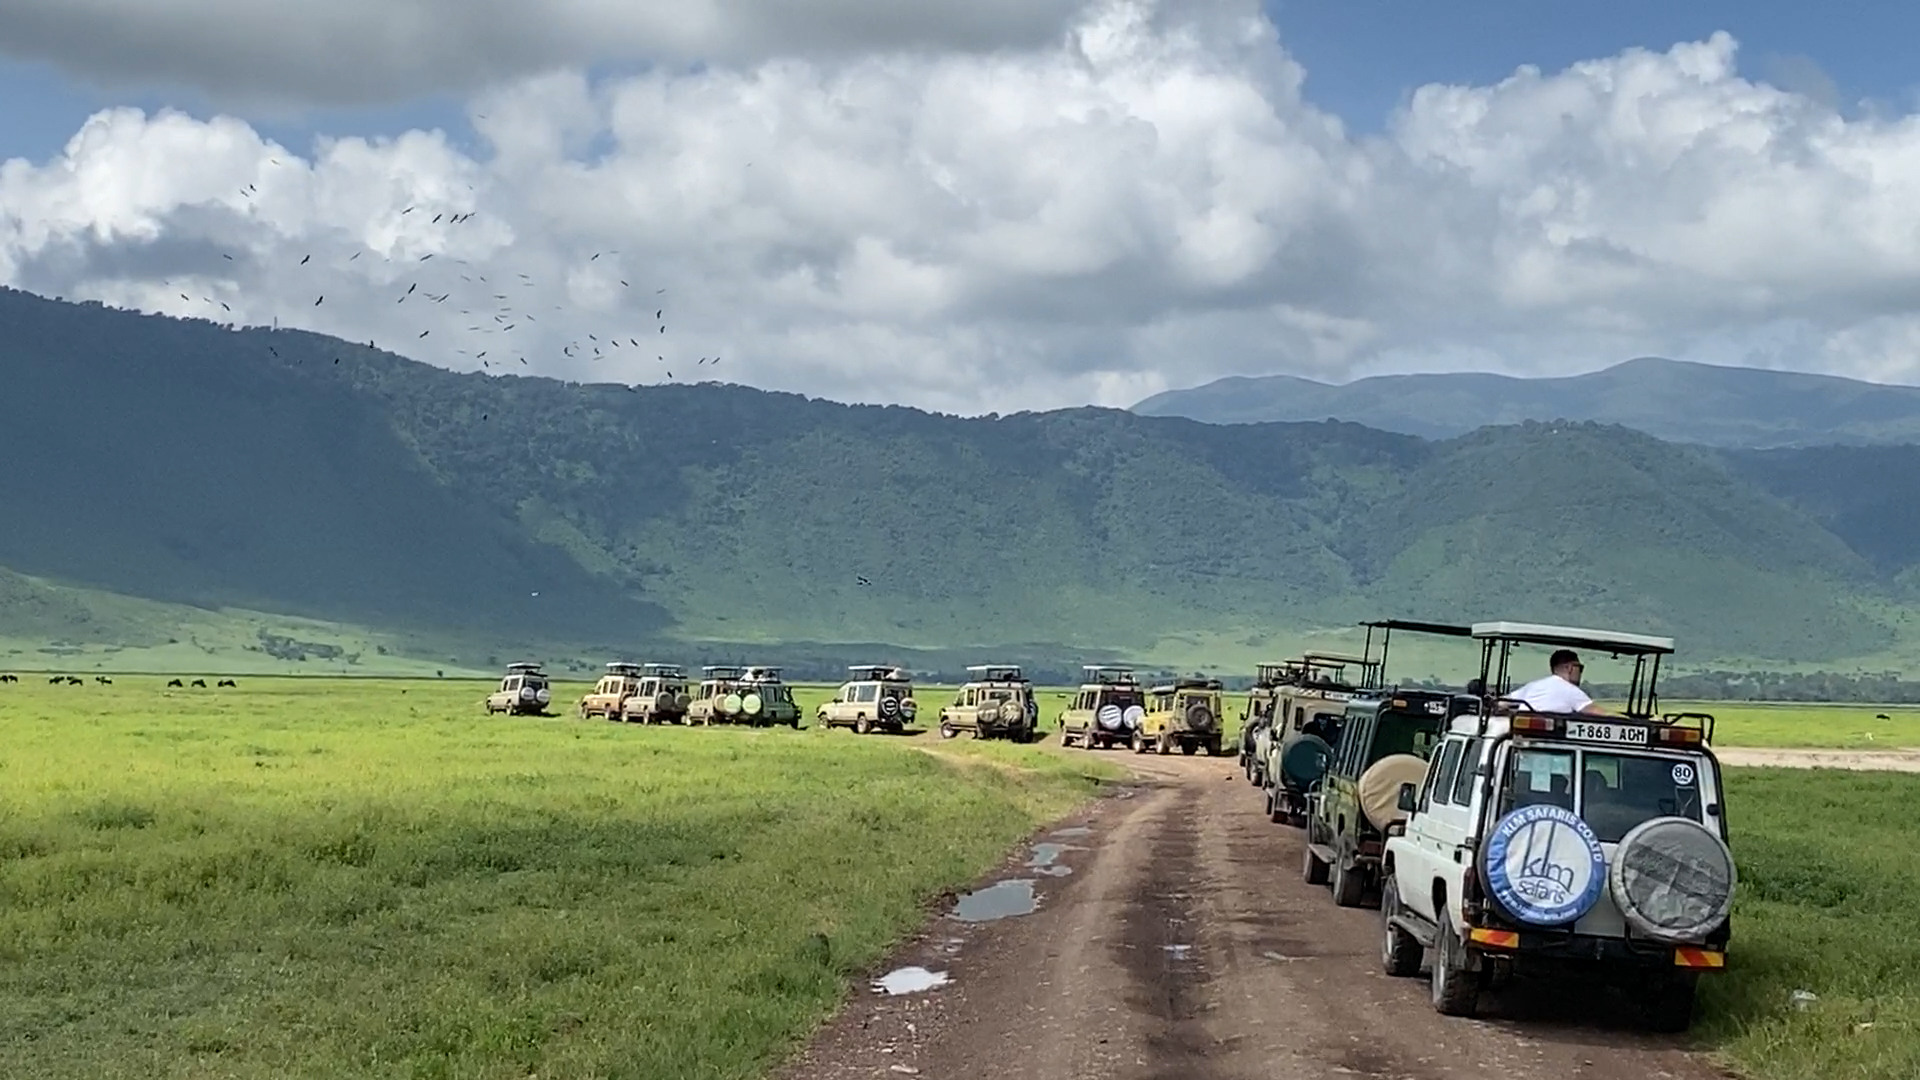 Đoàn xe đi “săn” Big Five ở Khu bảo tồn thiên nhiên Ngorongoro